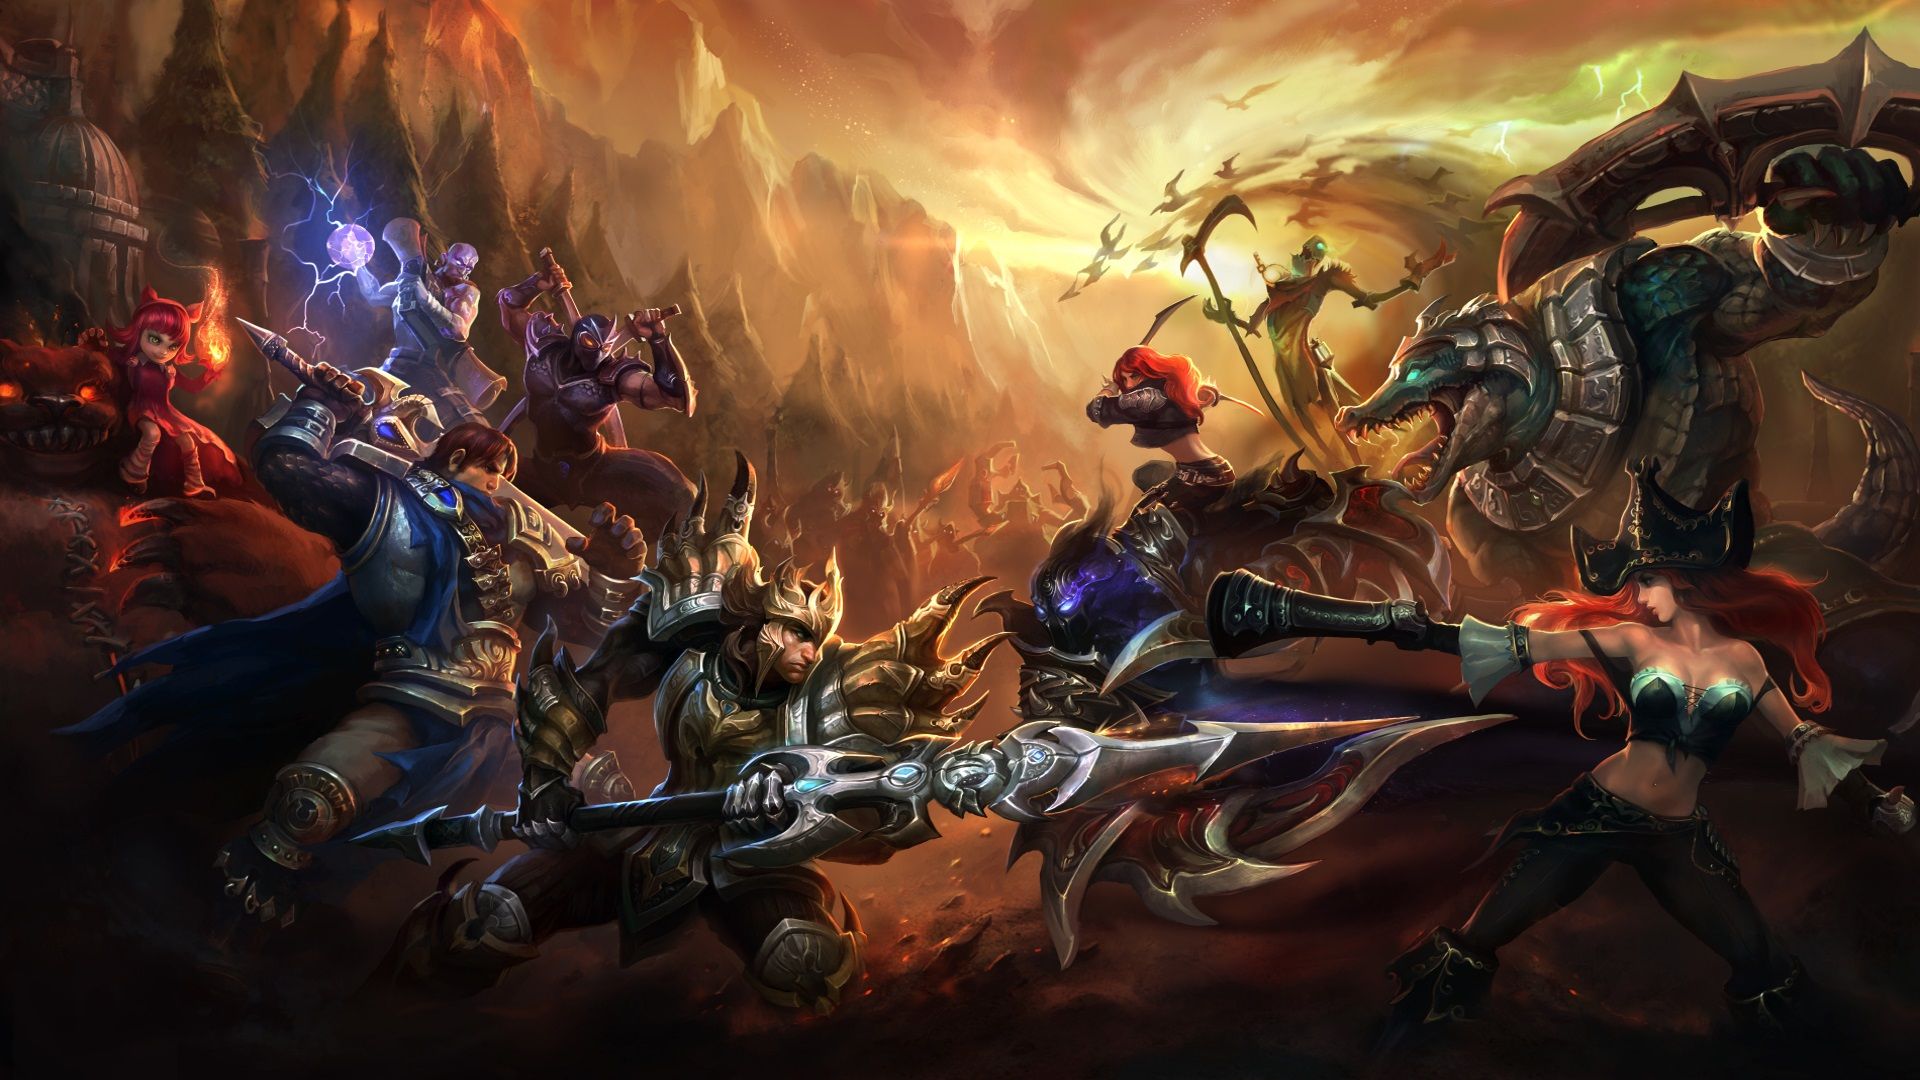 Migliori giochi per PC gratuiti: League of Legends. L'immagine mostra un folto gruppo di guerrieri e creature fantastiche che stanno per combattere